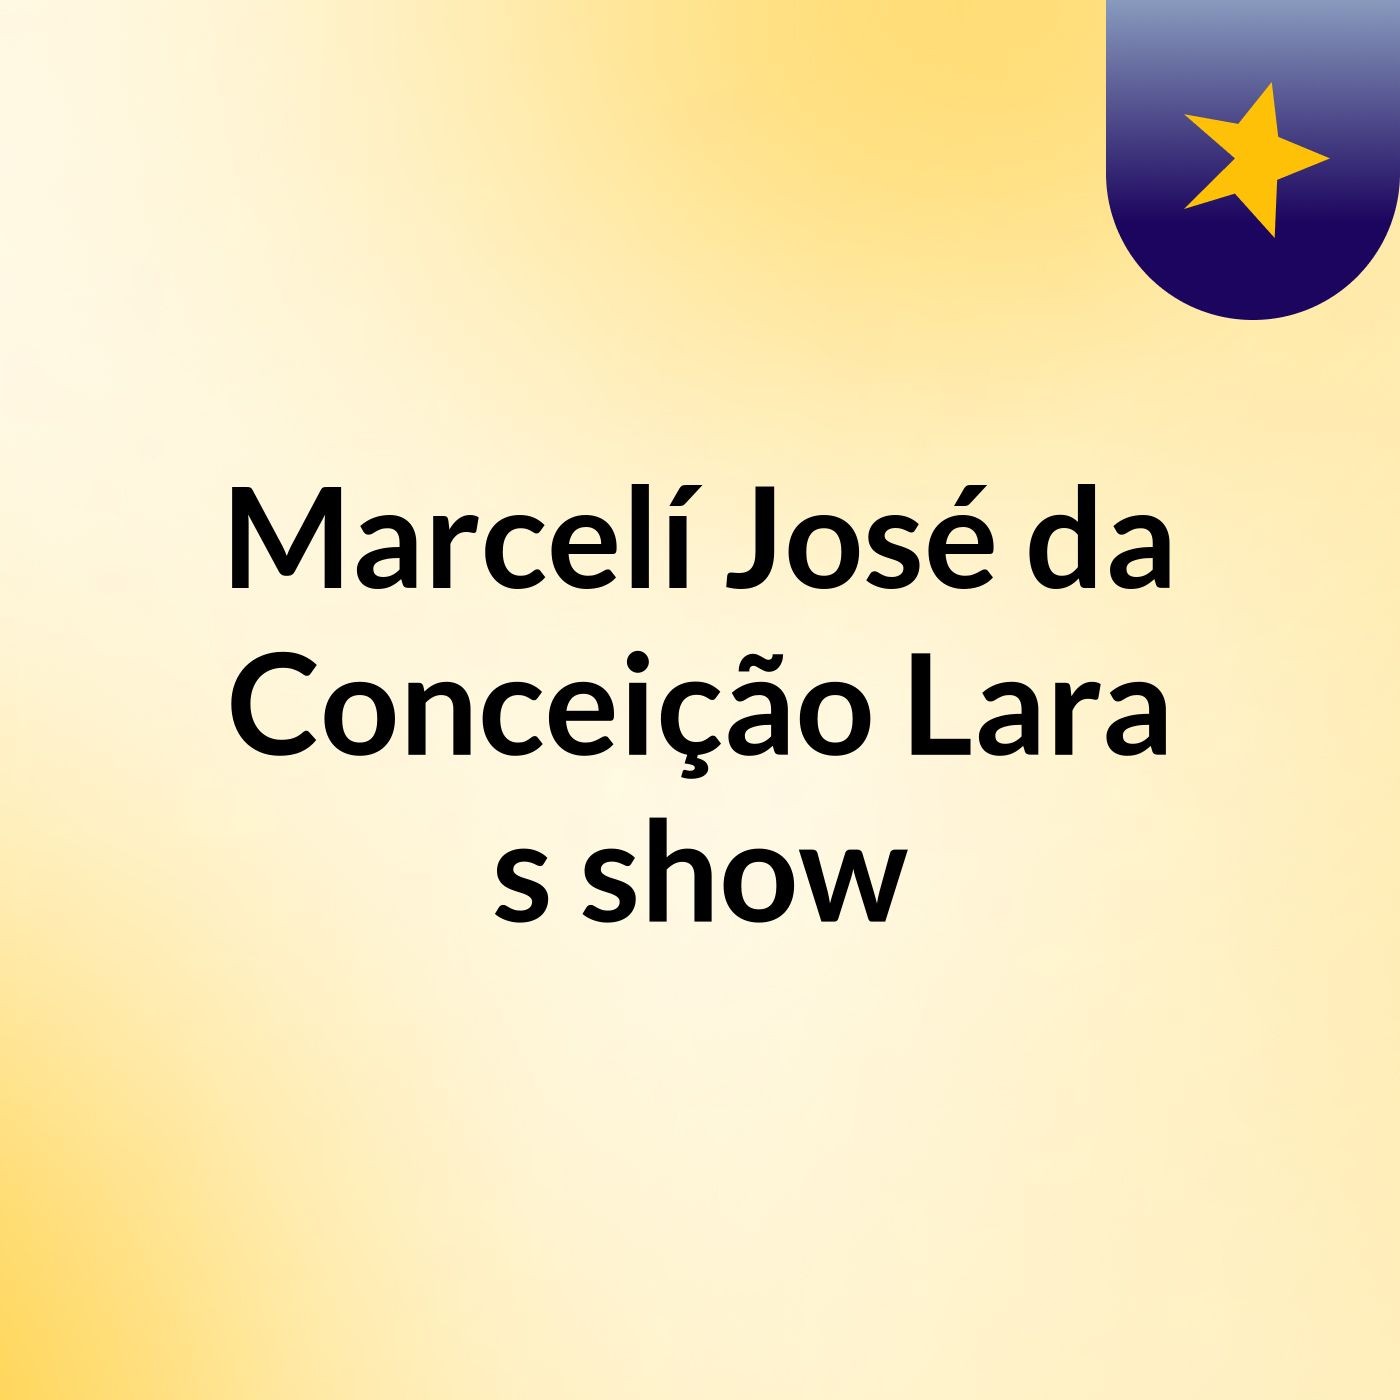 Marcelí José da Conceição Lara's show